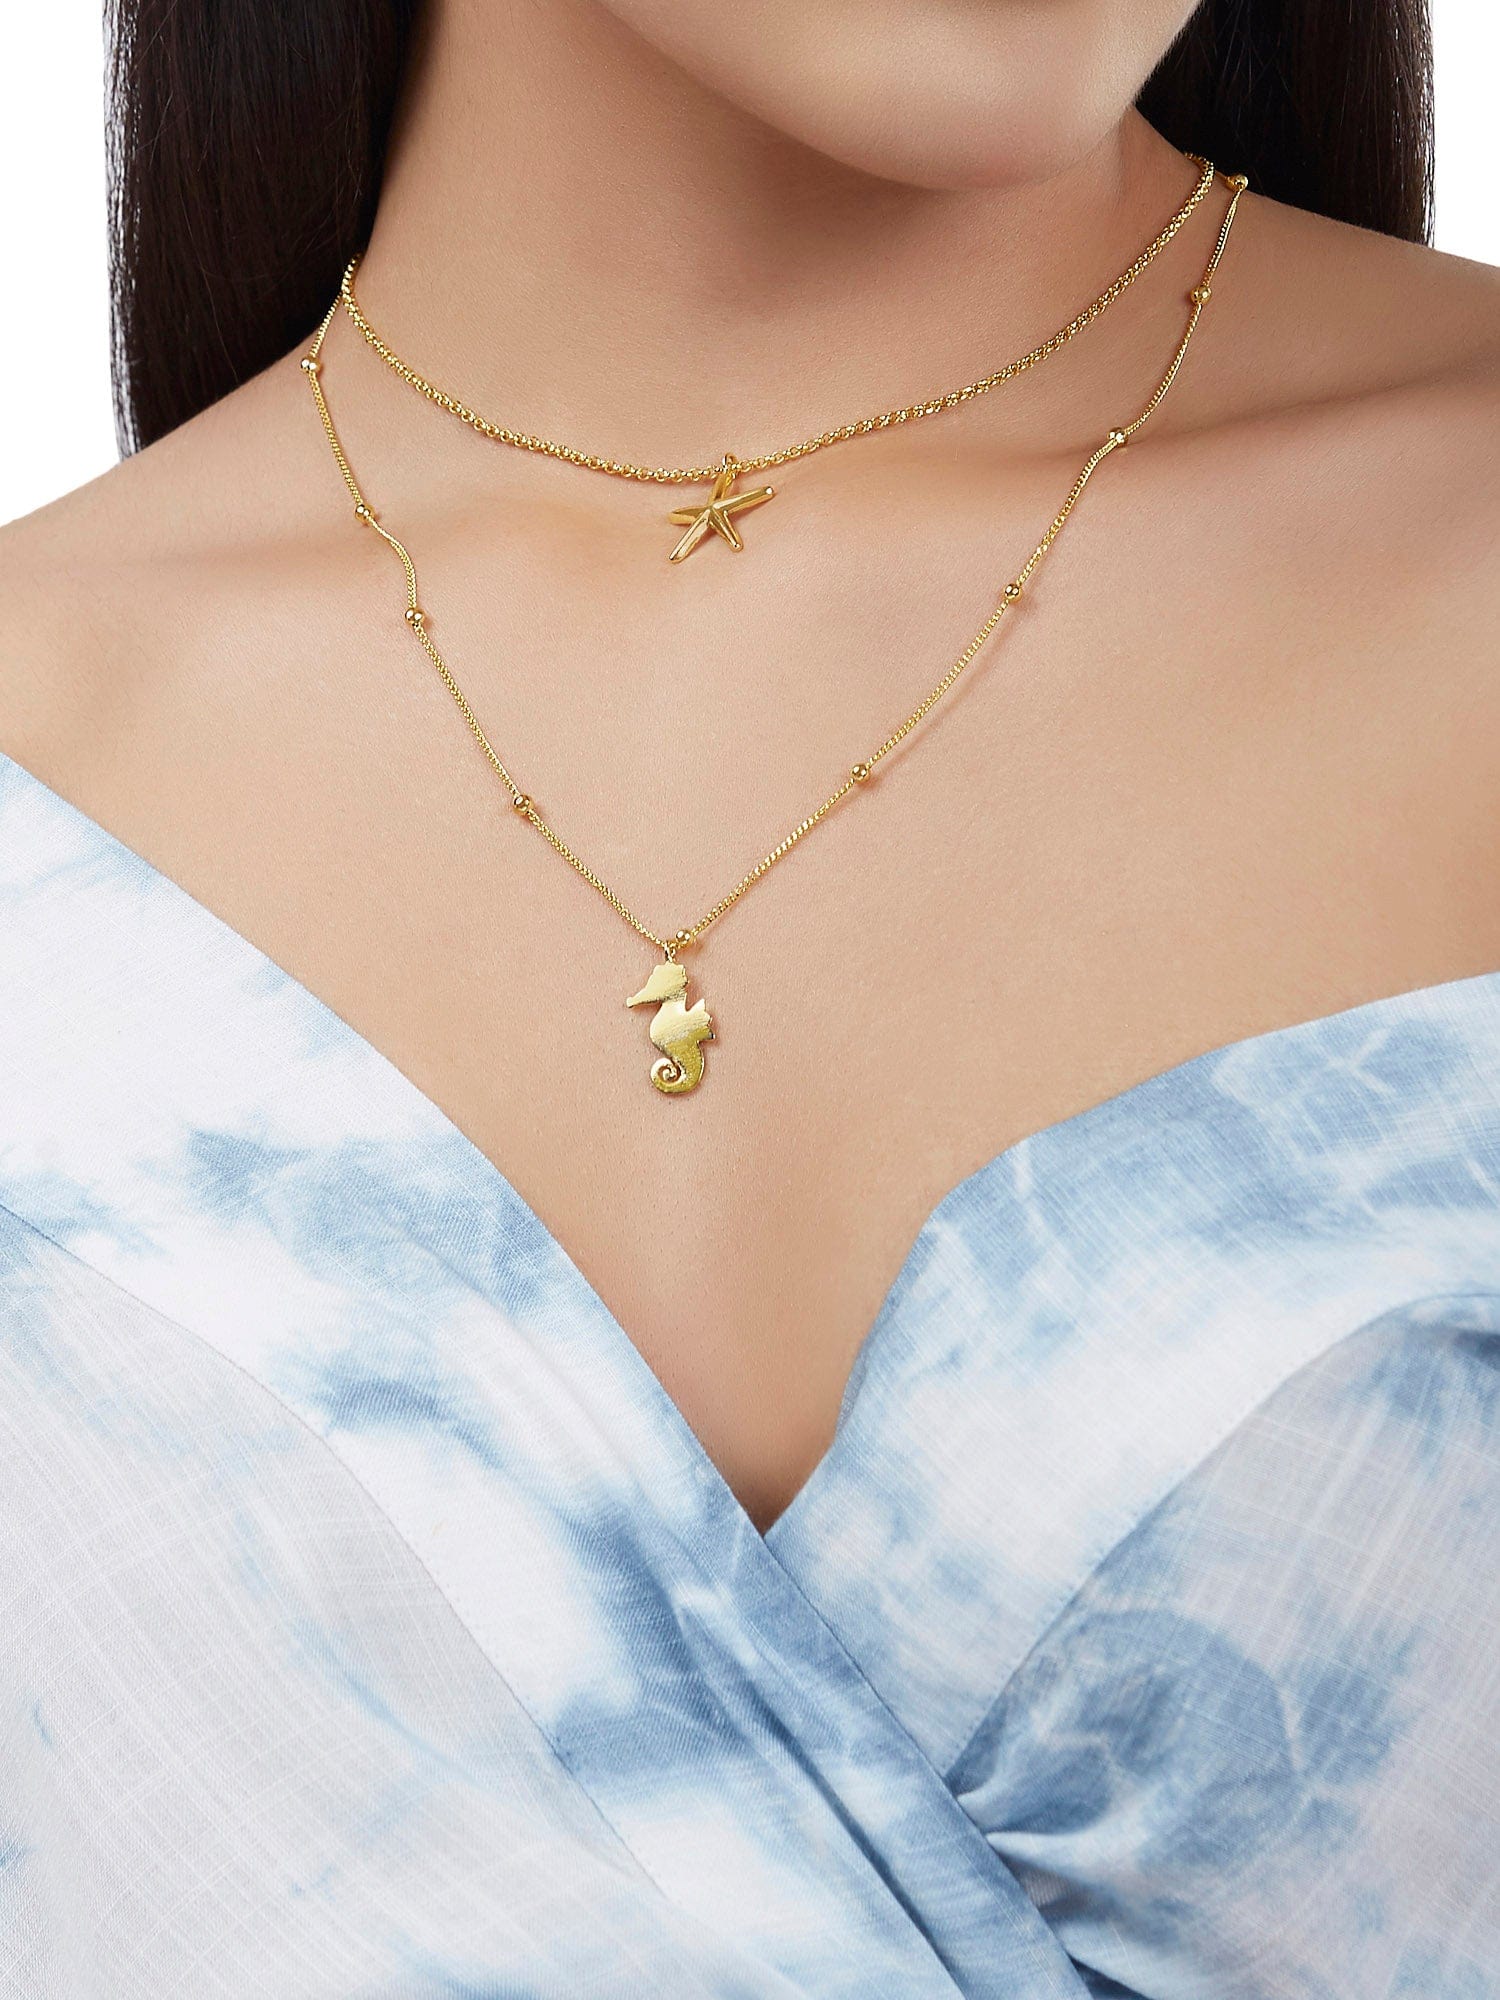 Ester necklace